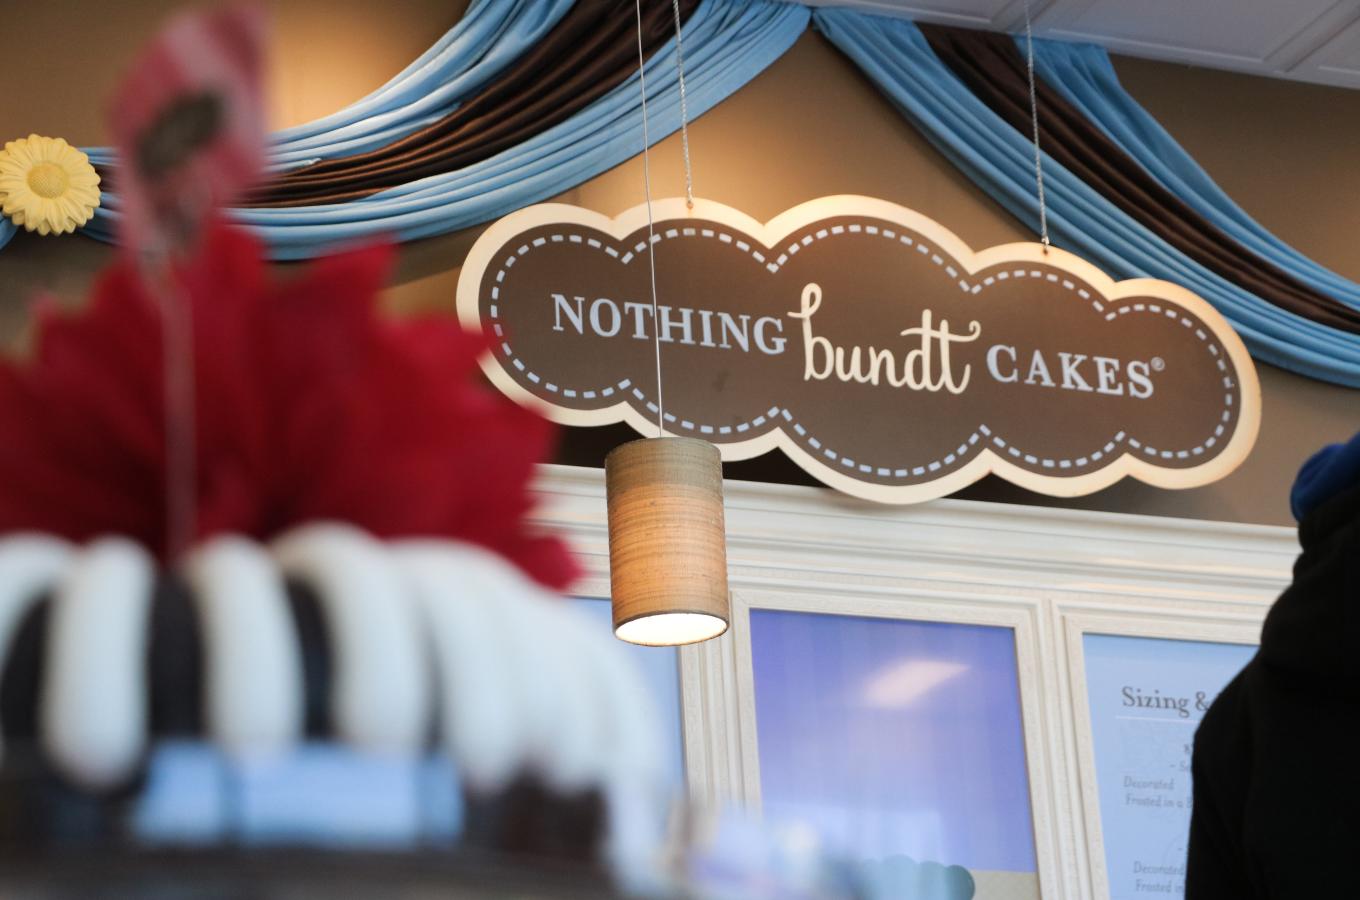 Fresh Baked Goods - Nothing Bundt Cakes | Groupon